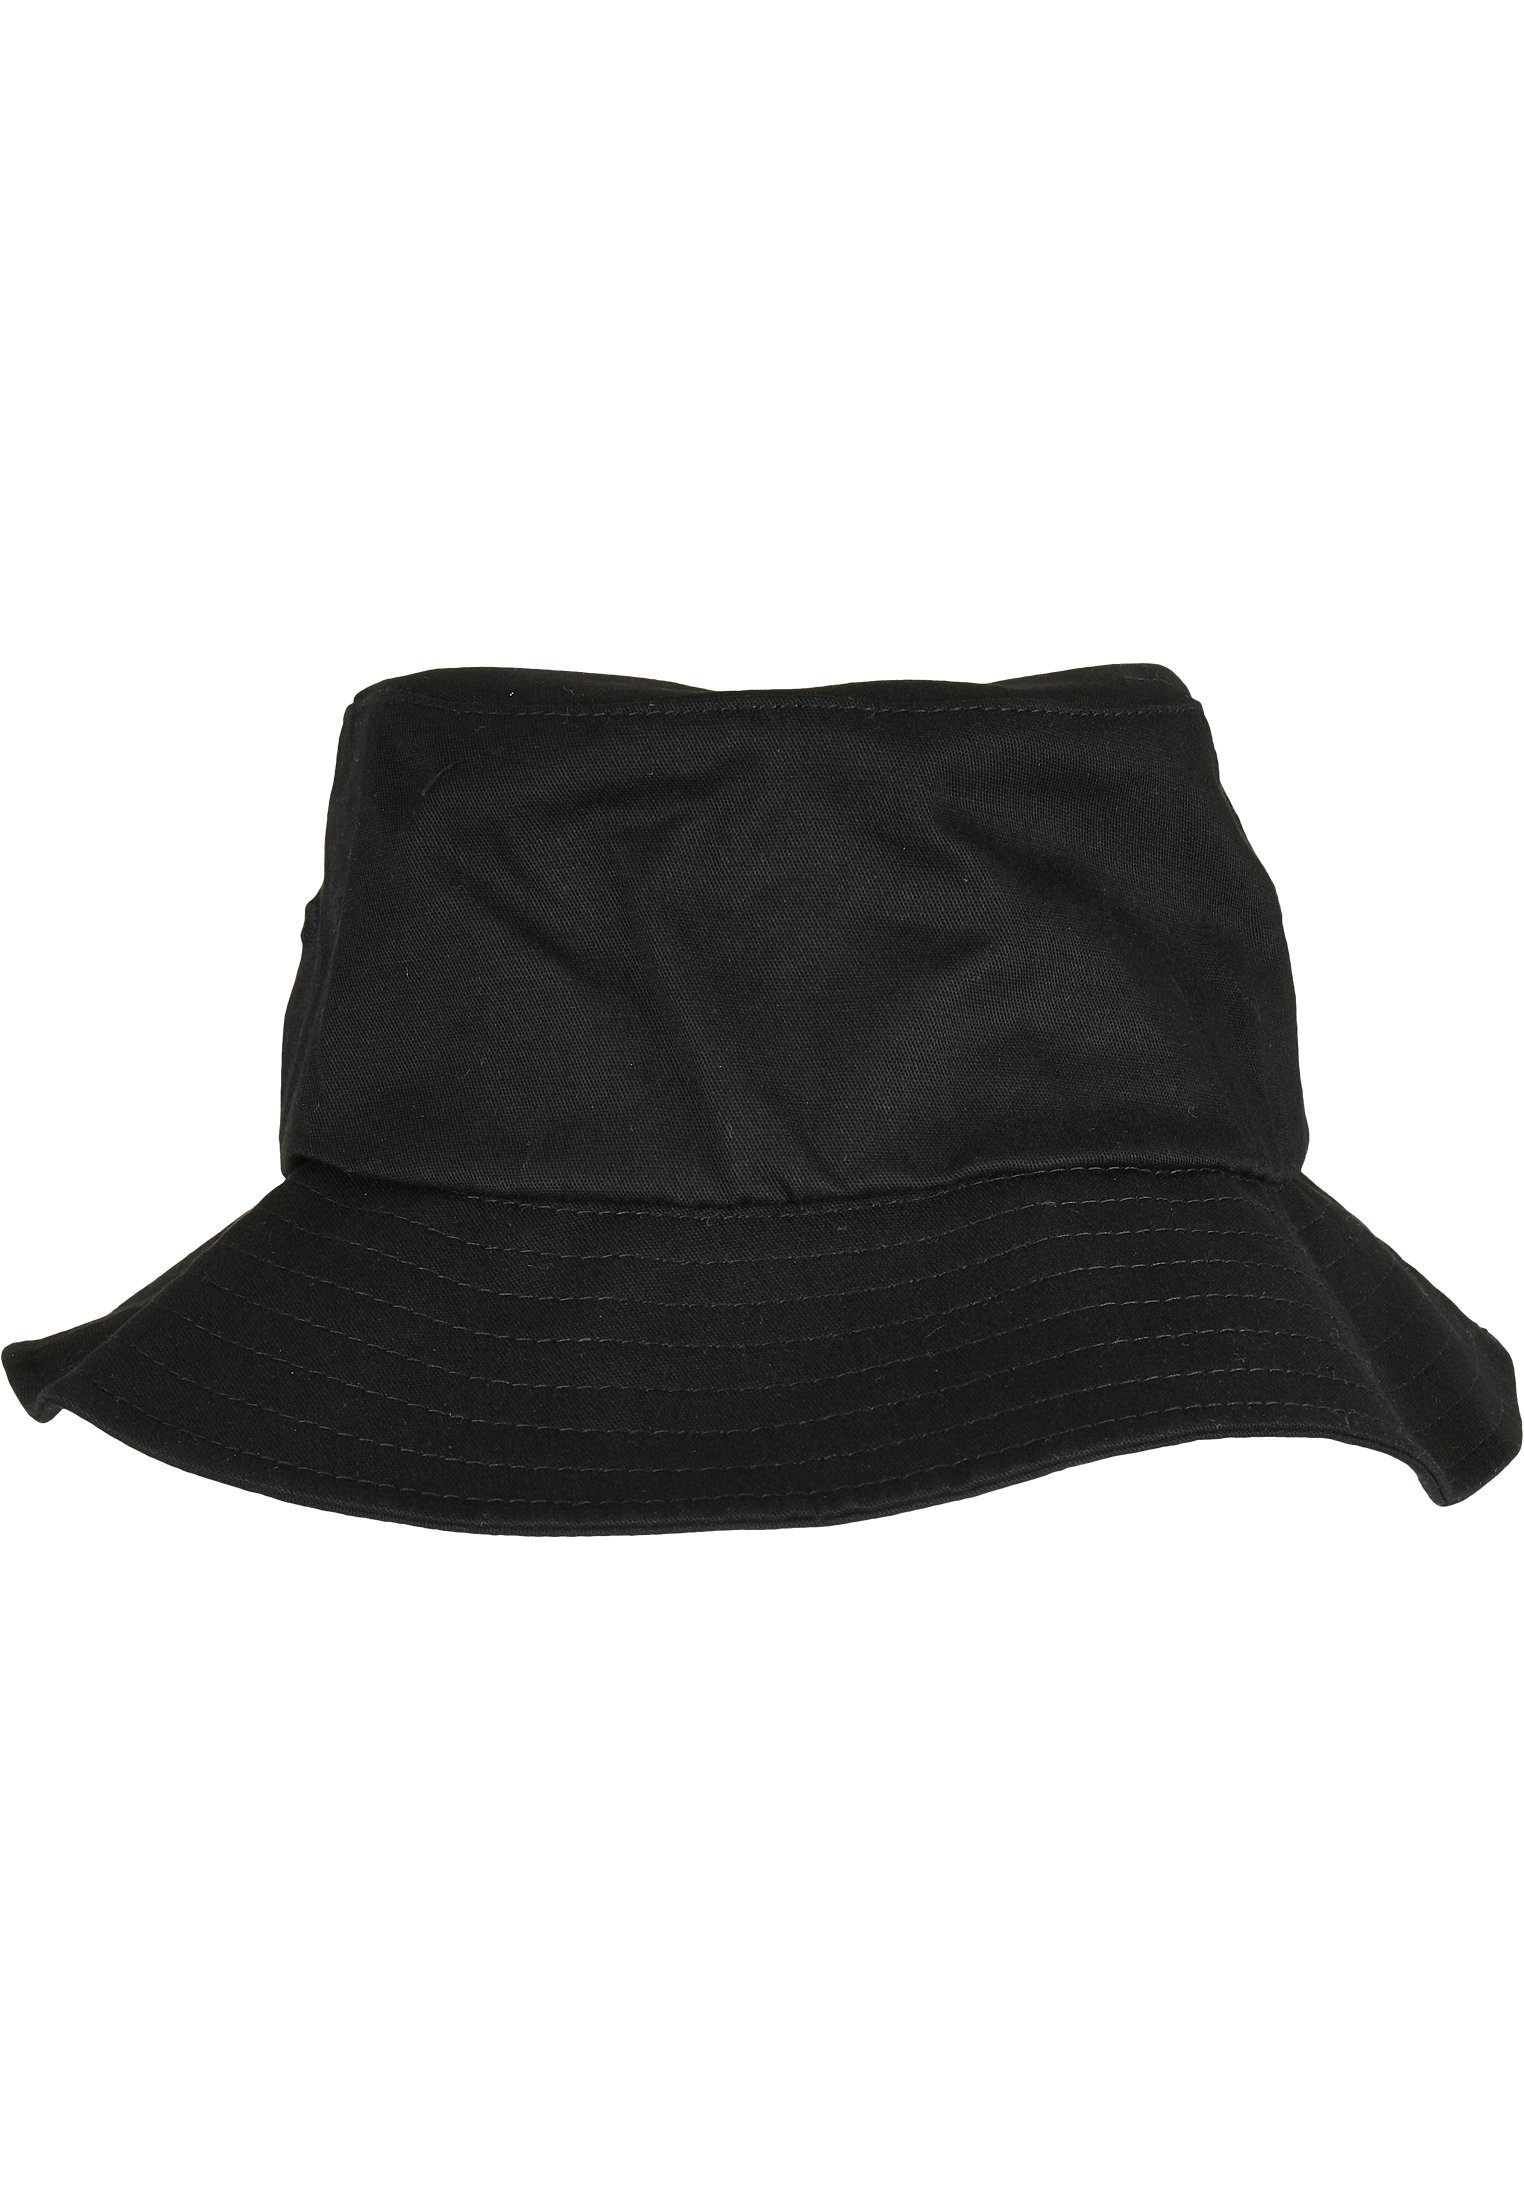 Logo Accessoires Bucket Hat, Merchcode Bucket Scarface Flex Merchcode Cap Hat